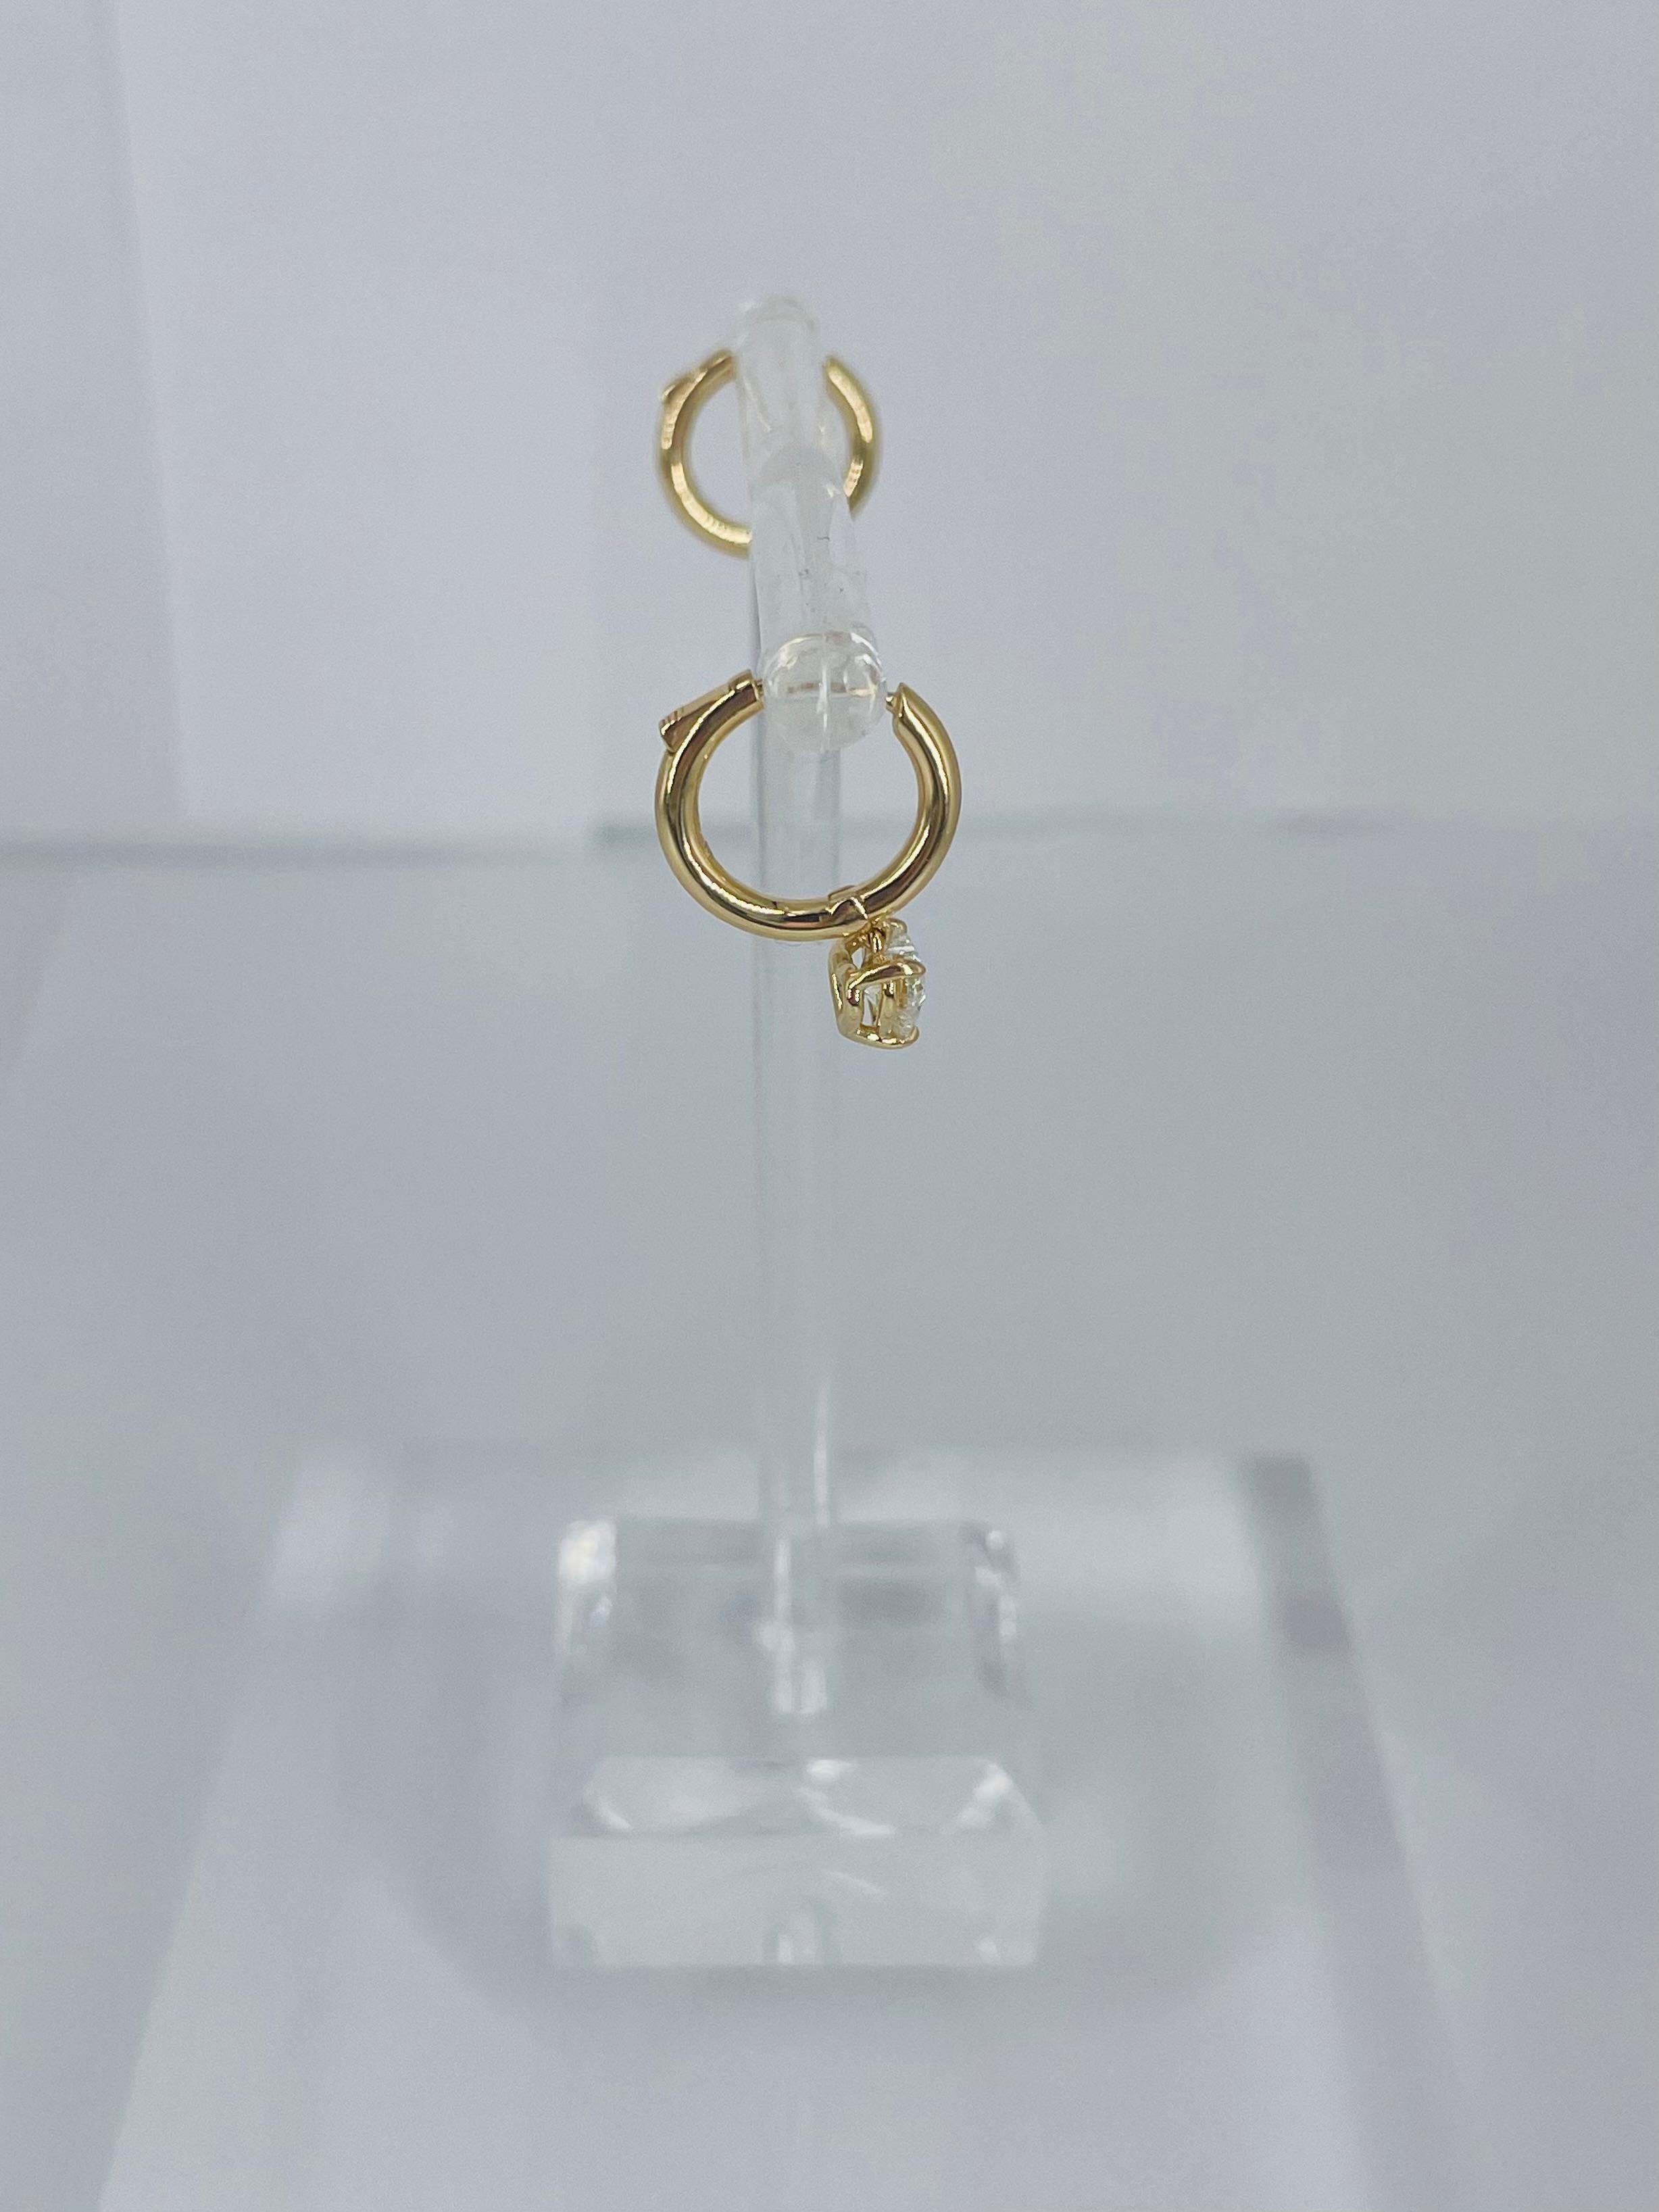 J. Birnbach 18K Yellow Gold Huggie Hoop Earrings with Heart Shape Diamond Drop For Sale 1